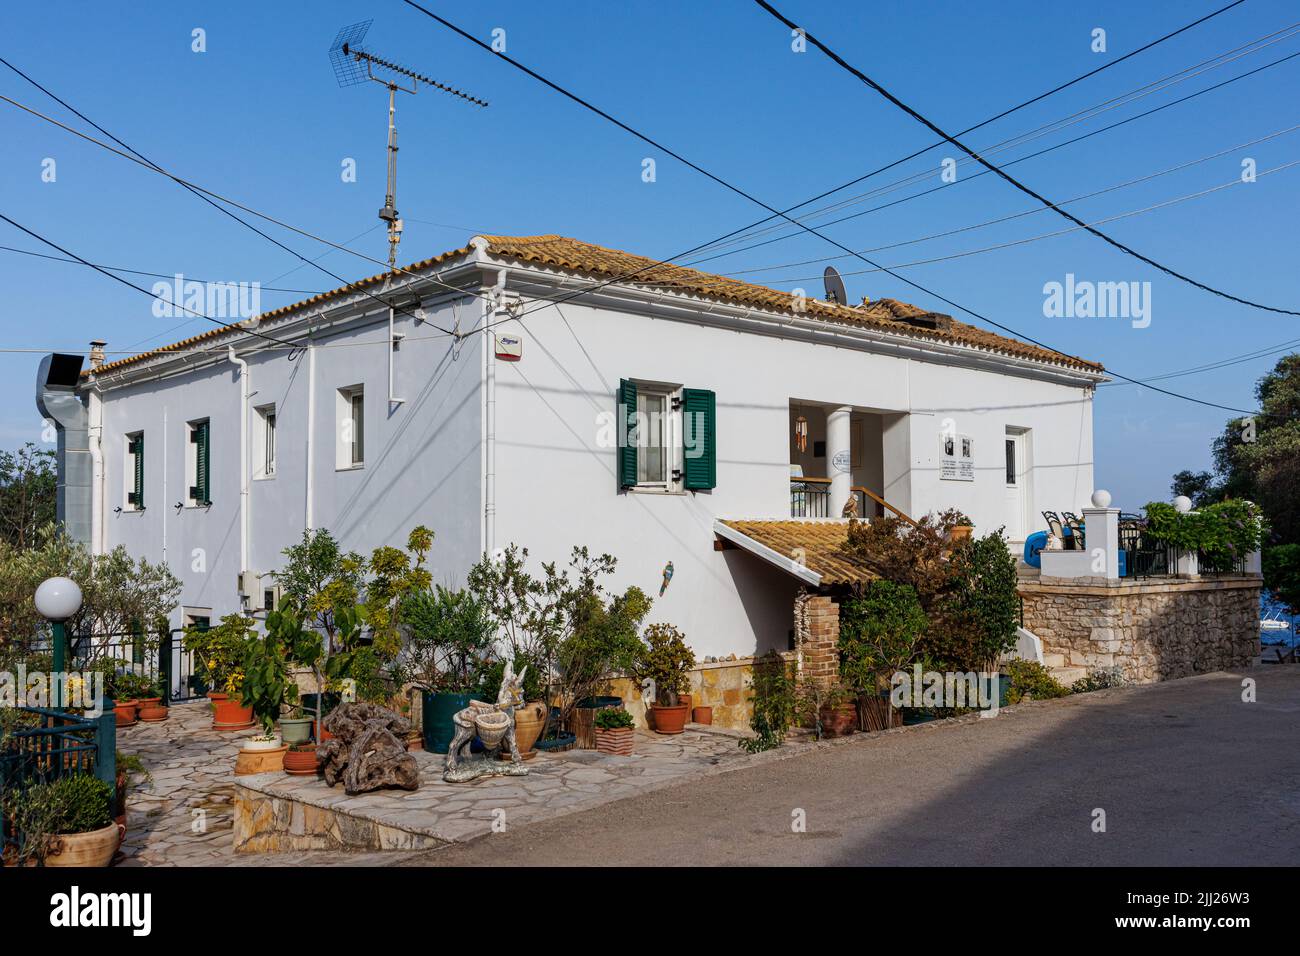 Casa blanca de la familia Durell en la isla de Corfú, Grecia Foto de stock